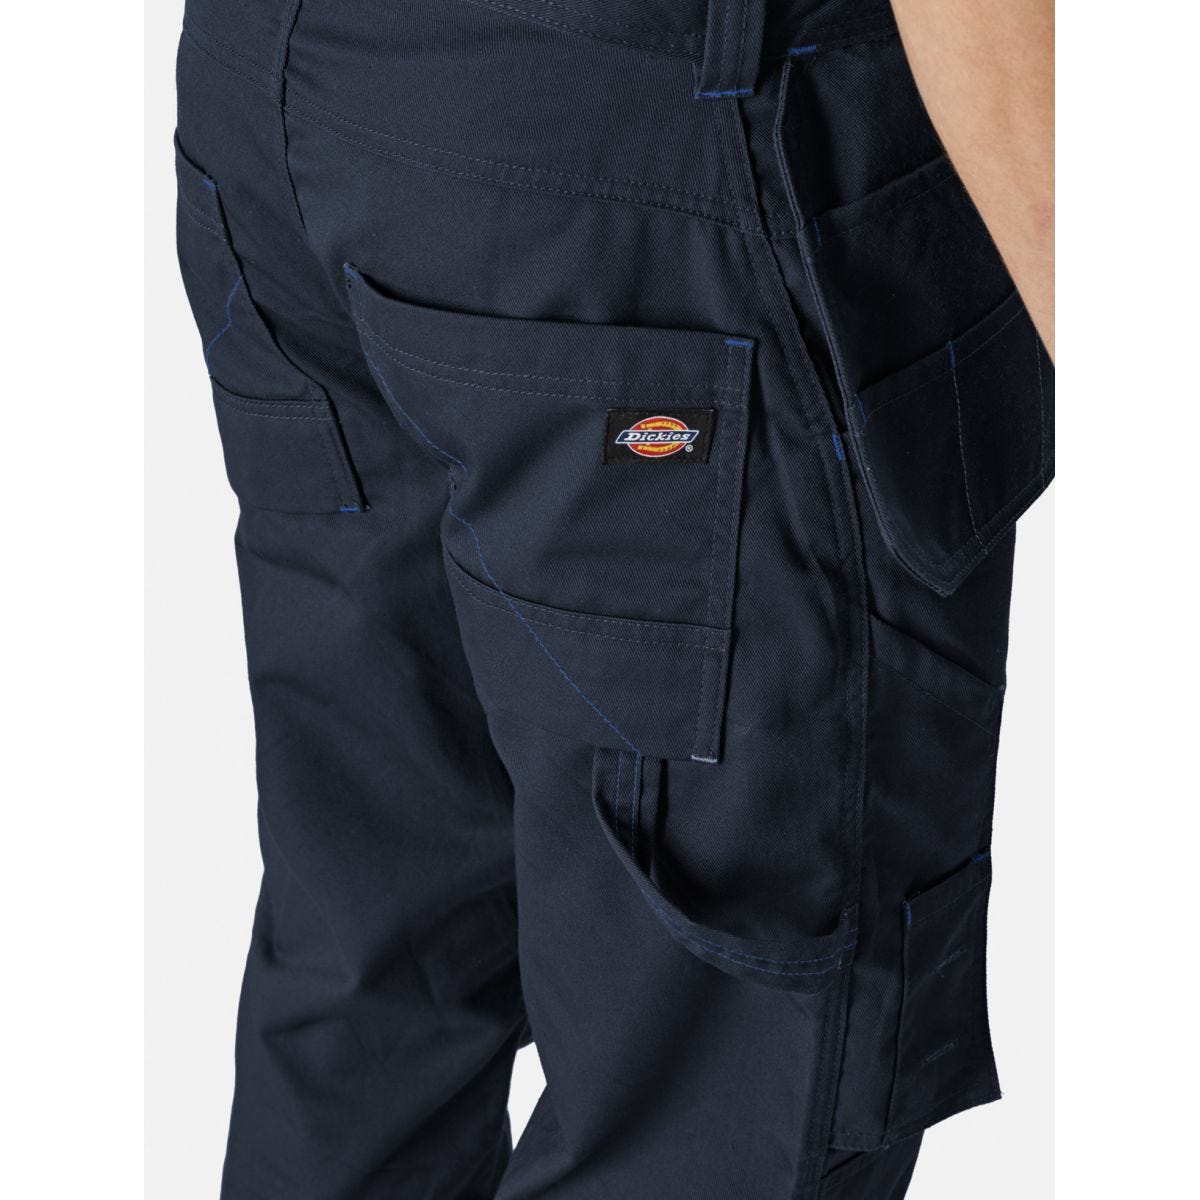 Pantalon Redhawk Pro Bleu marine - Dickies - Taille 42 3